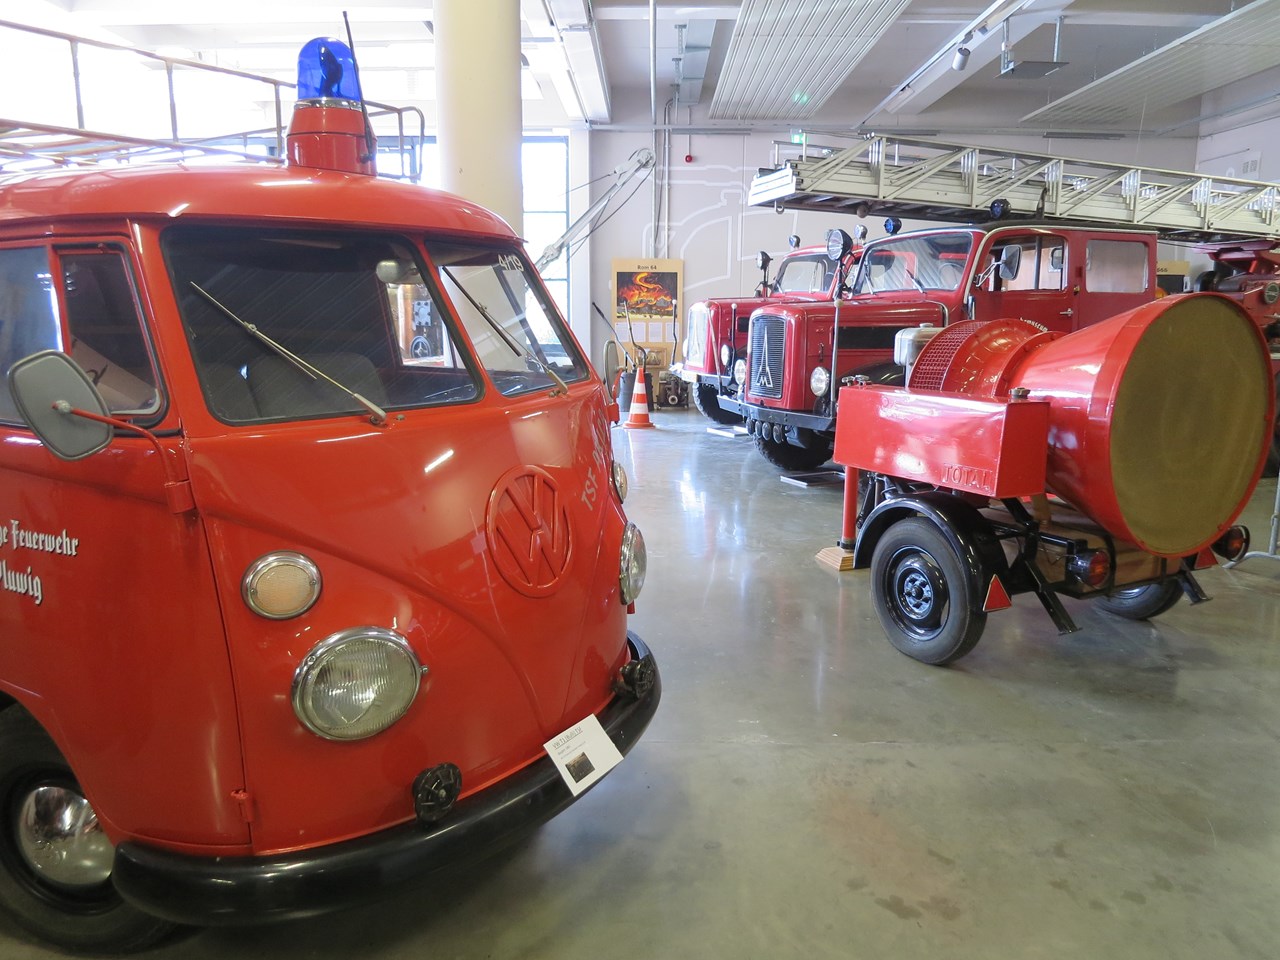 Feuerwehr Erlebnis Museum Highlights beim Ausflugsziel Restaurierte Fahrzeuge und Exponate